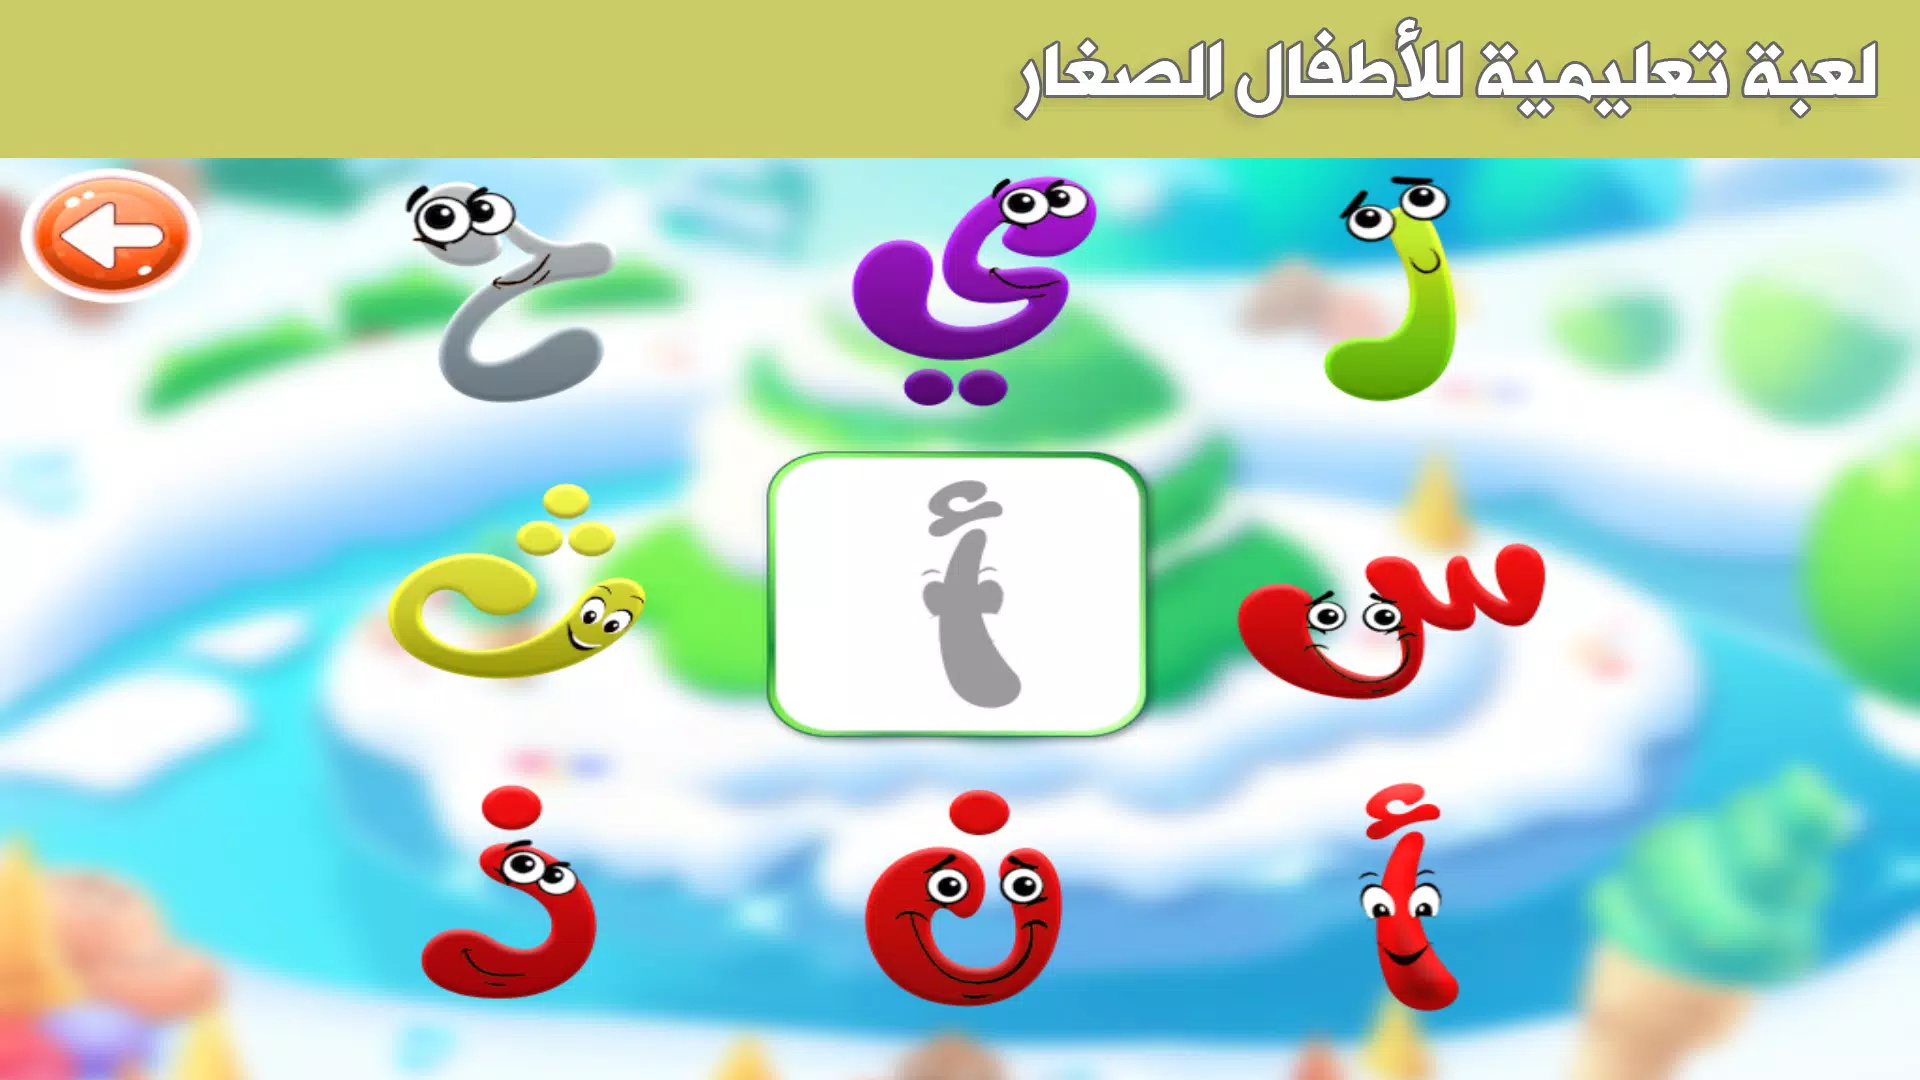 Descarga de APK de حزورة وفزورة - ألعاب للأطفال para Android